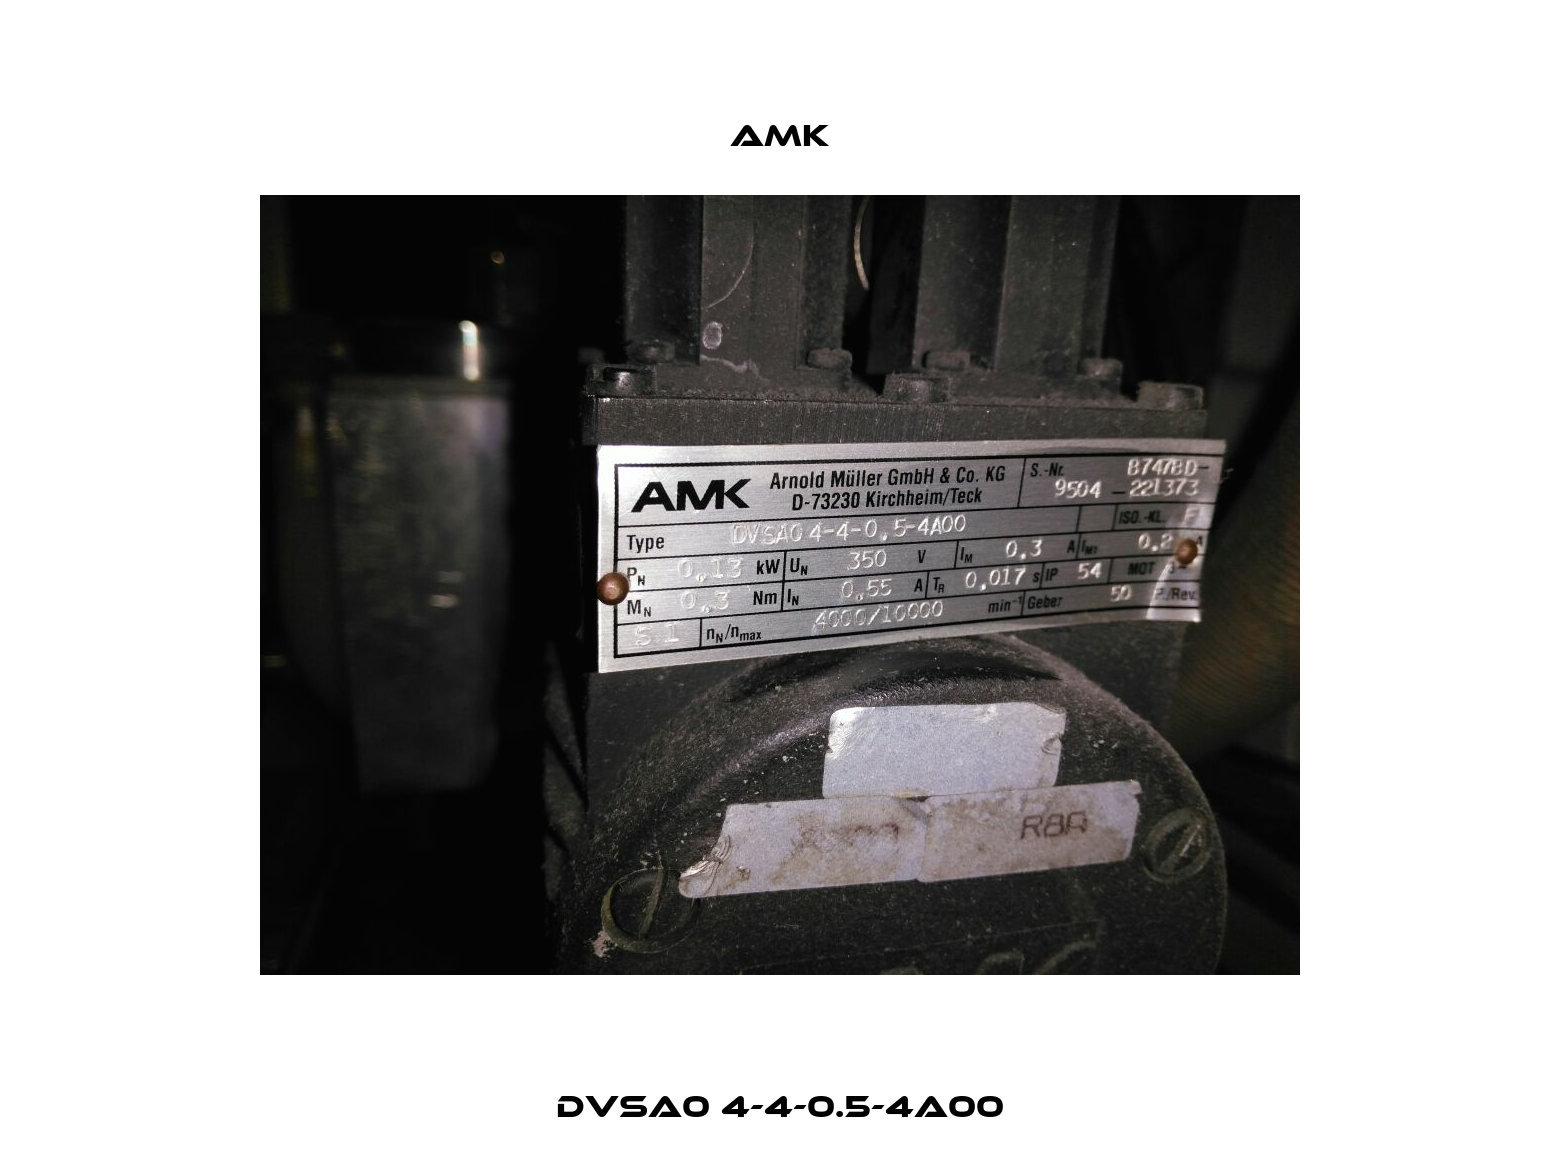 DVSA0 4-4-0.5-4A00 AMK